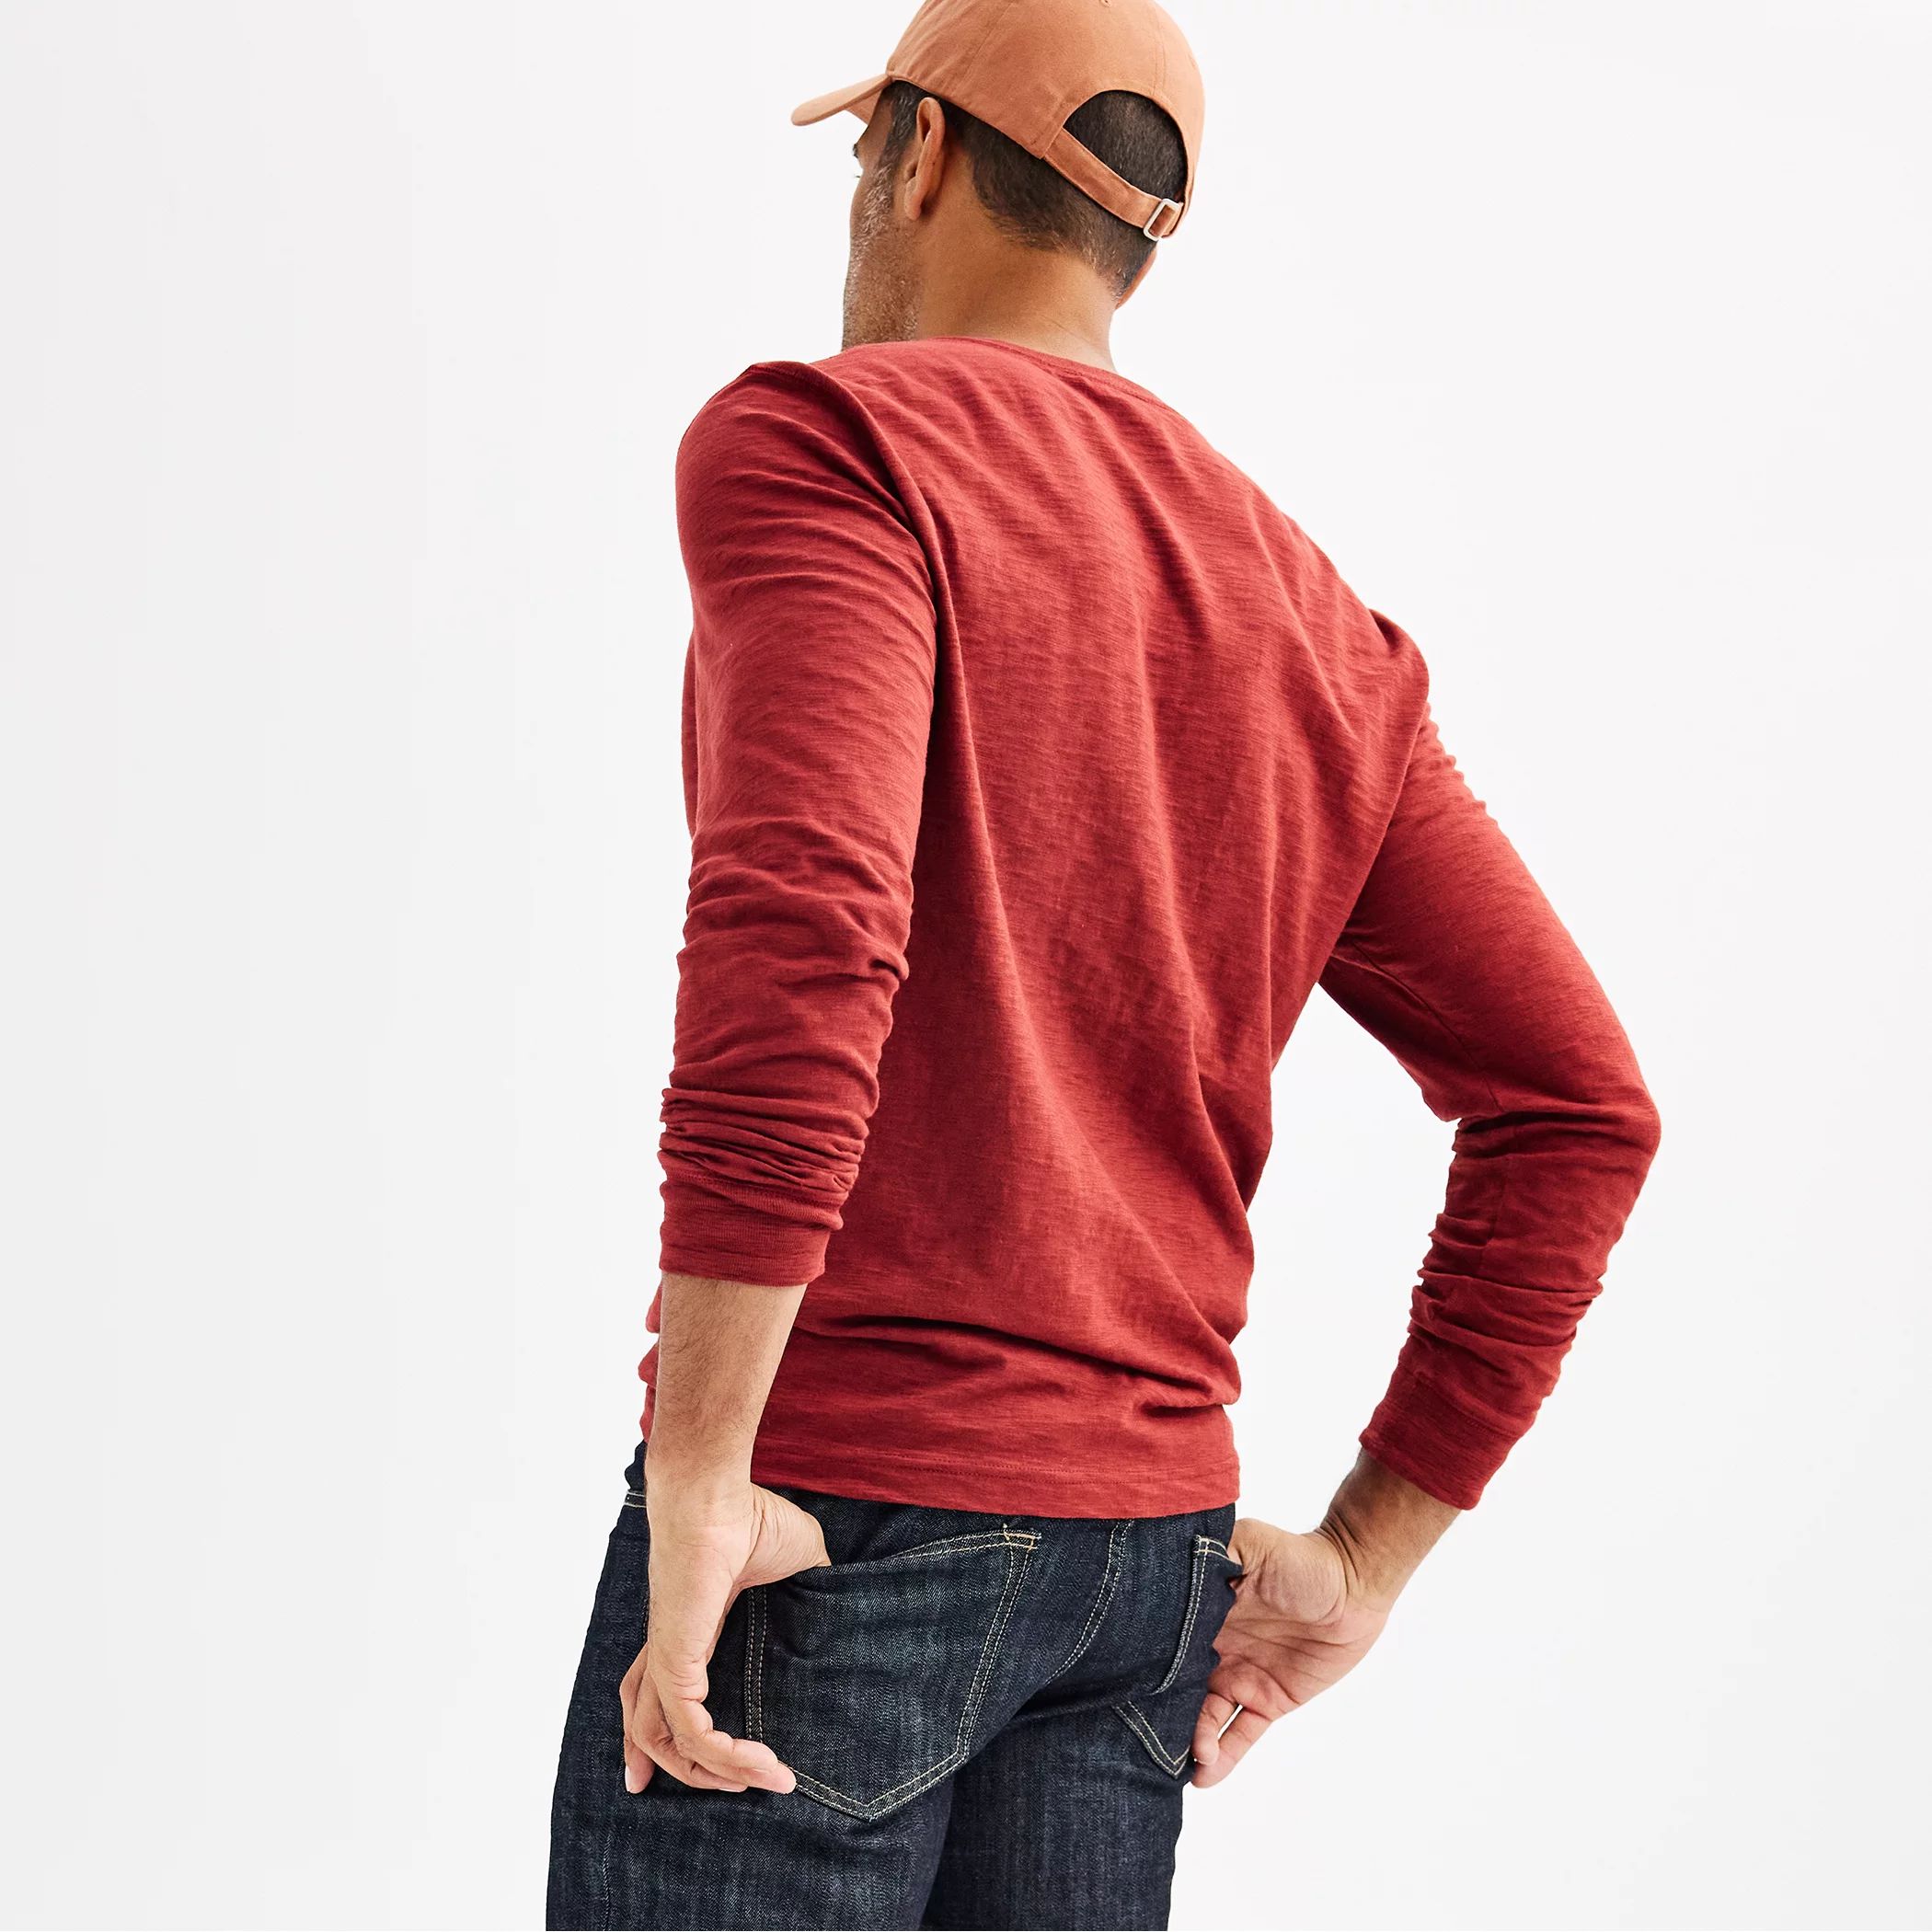 Мужская футболка на пуговицах Sonoma Goods For Life с длинными рукавами